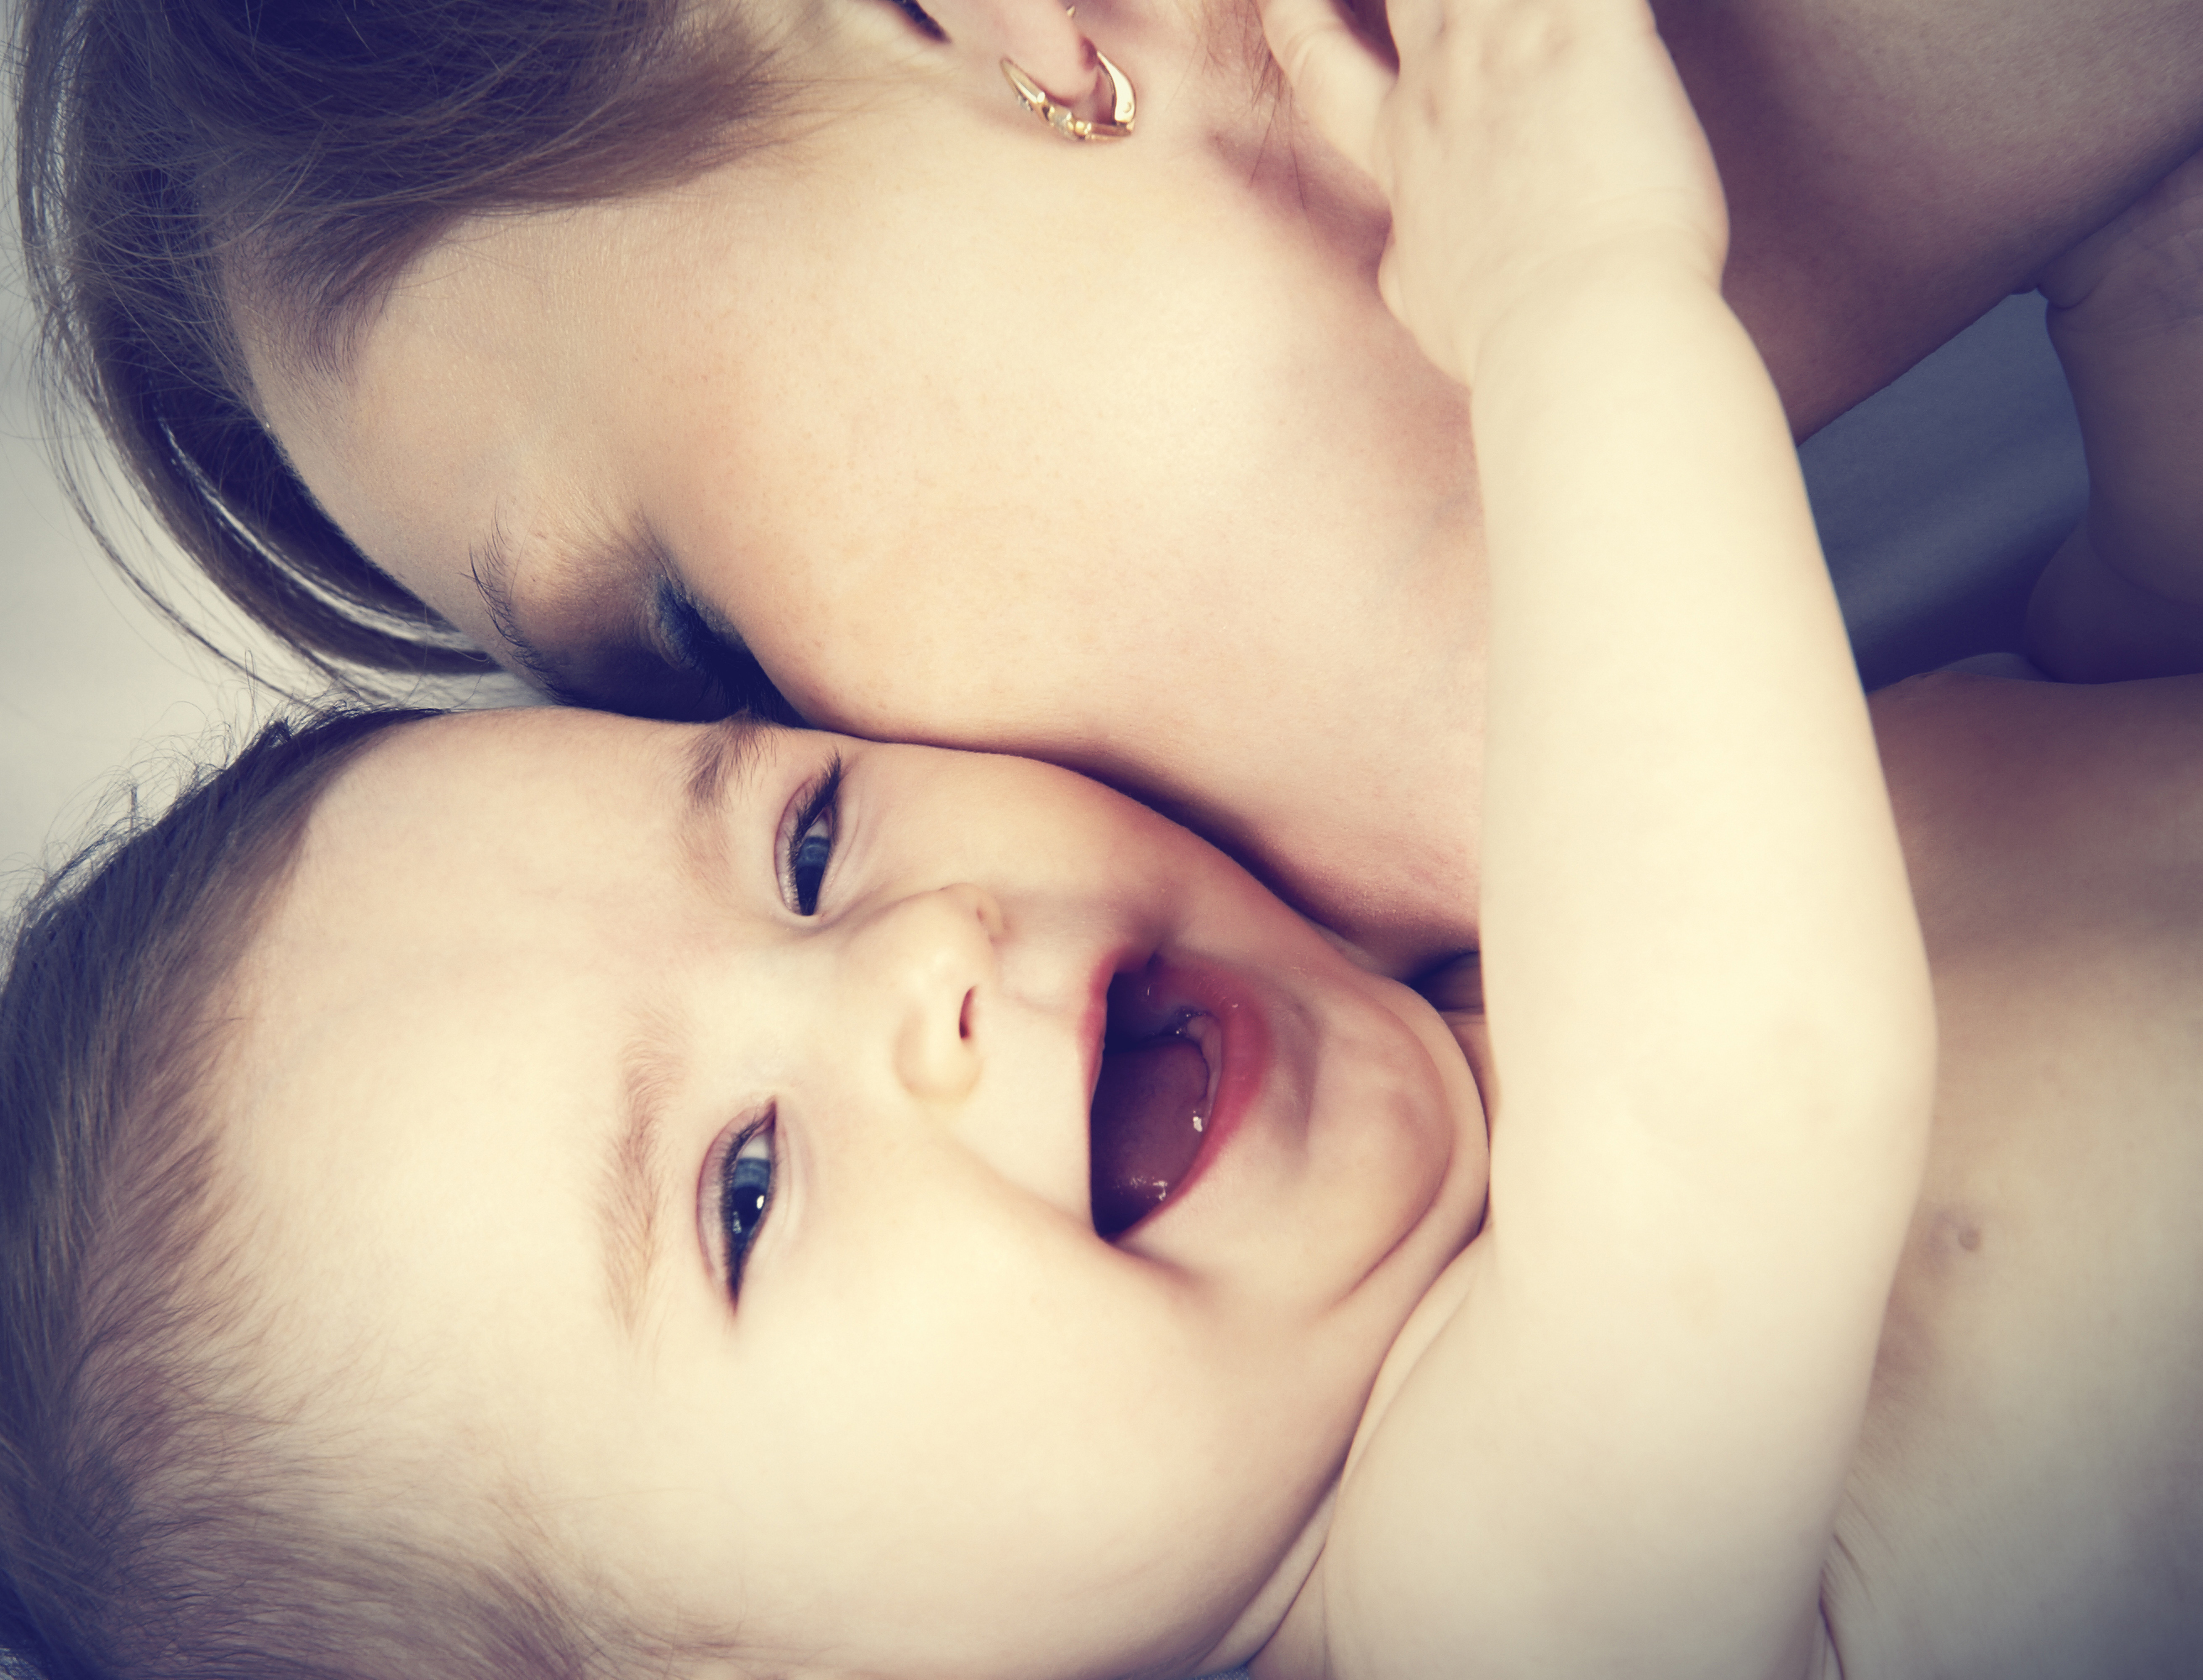 Видео целовать маму. Мама целует малыша. Женщина целует ребенка. Мать целует младенца. Слаще всего поцелуй детей.